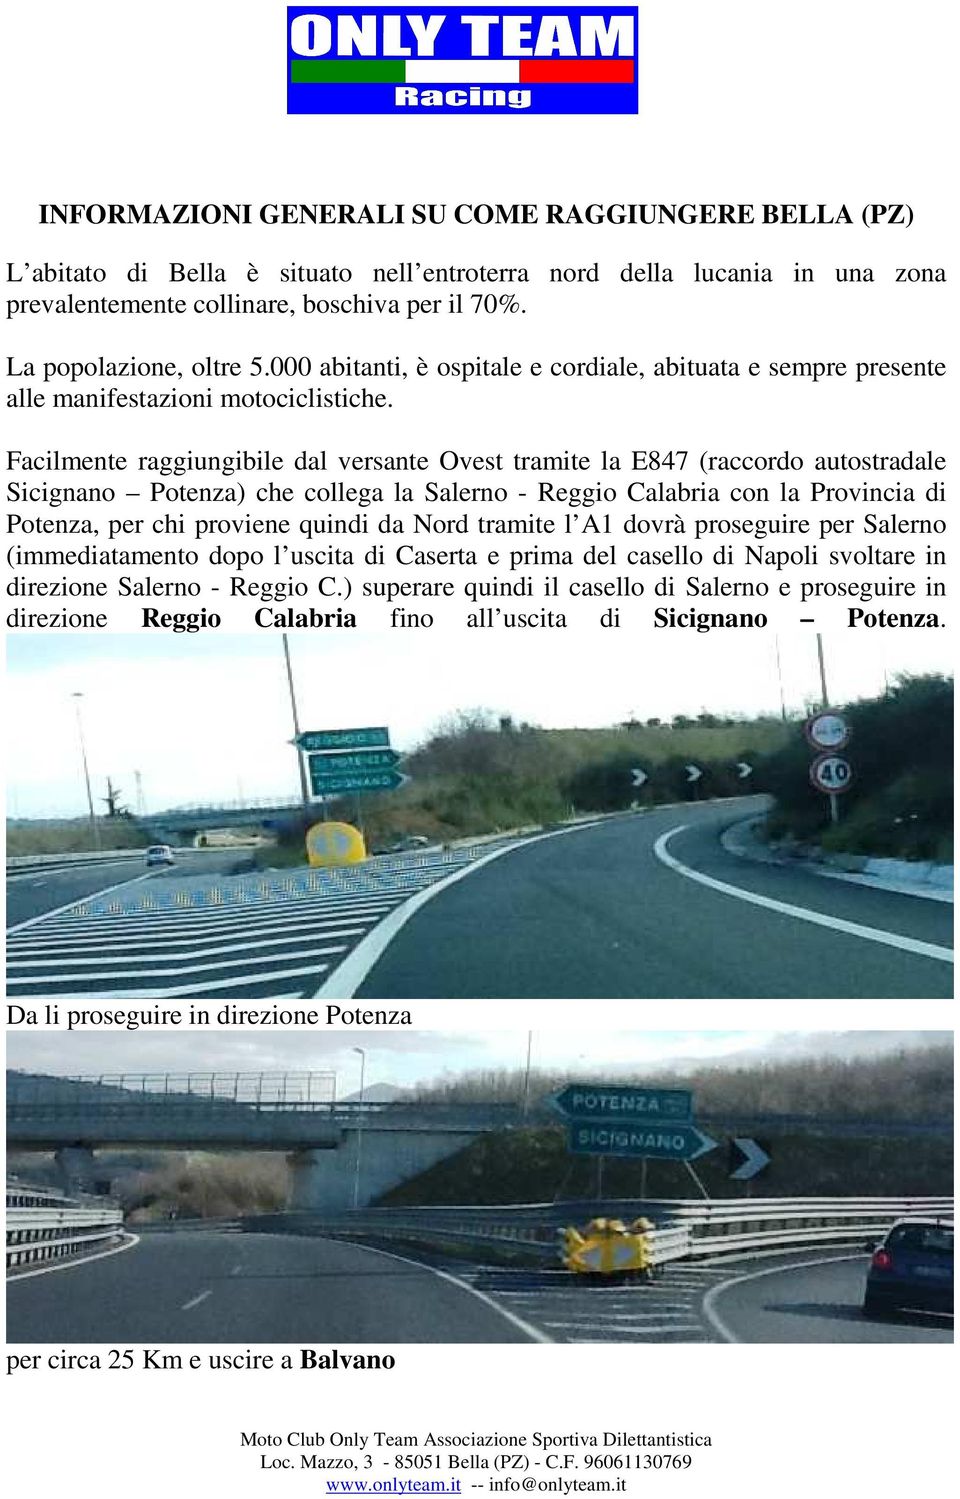 Facilmente raggiungibile dal versante Ovest tramite la E847 (raccordo autostradale Sicignano Potenza) che collega la Salerno - Reggio Calabria con la Provincia di Potenza, per chi proviene quindi da